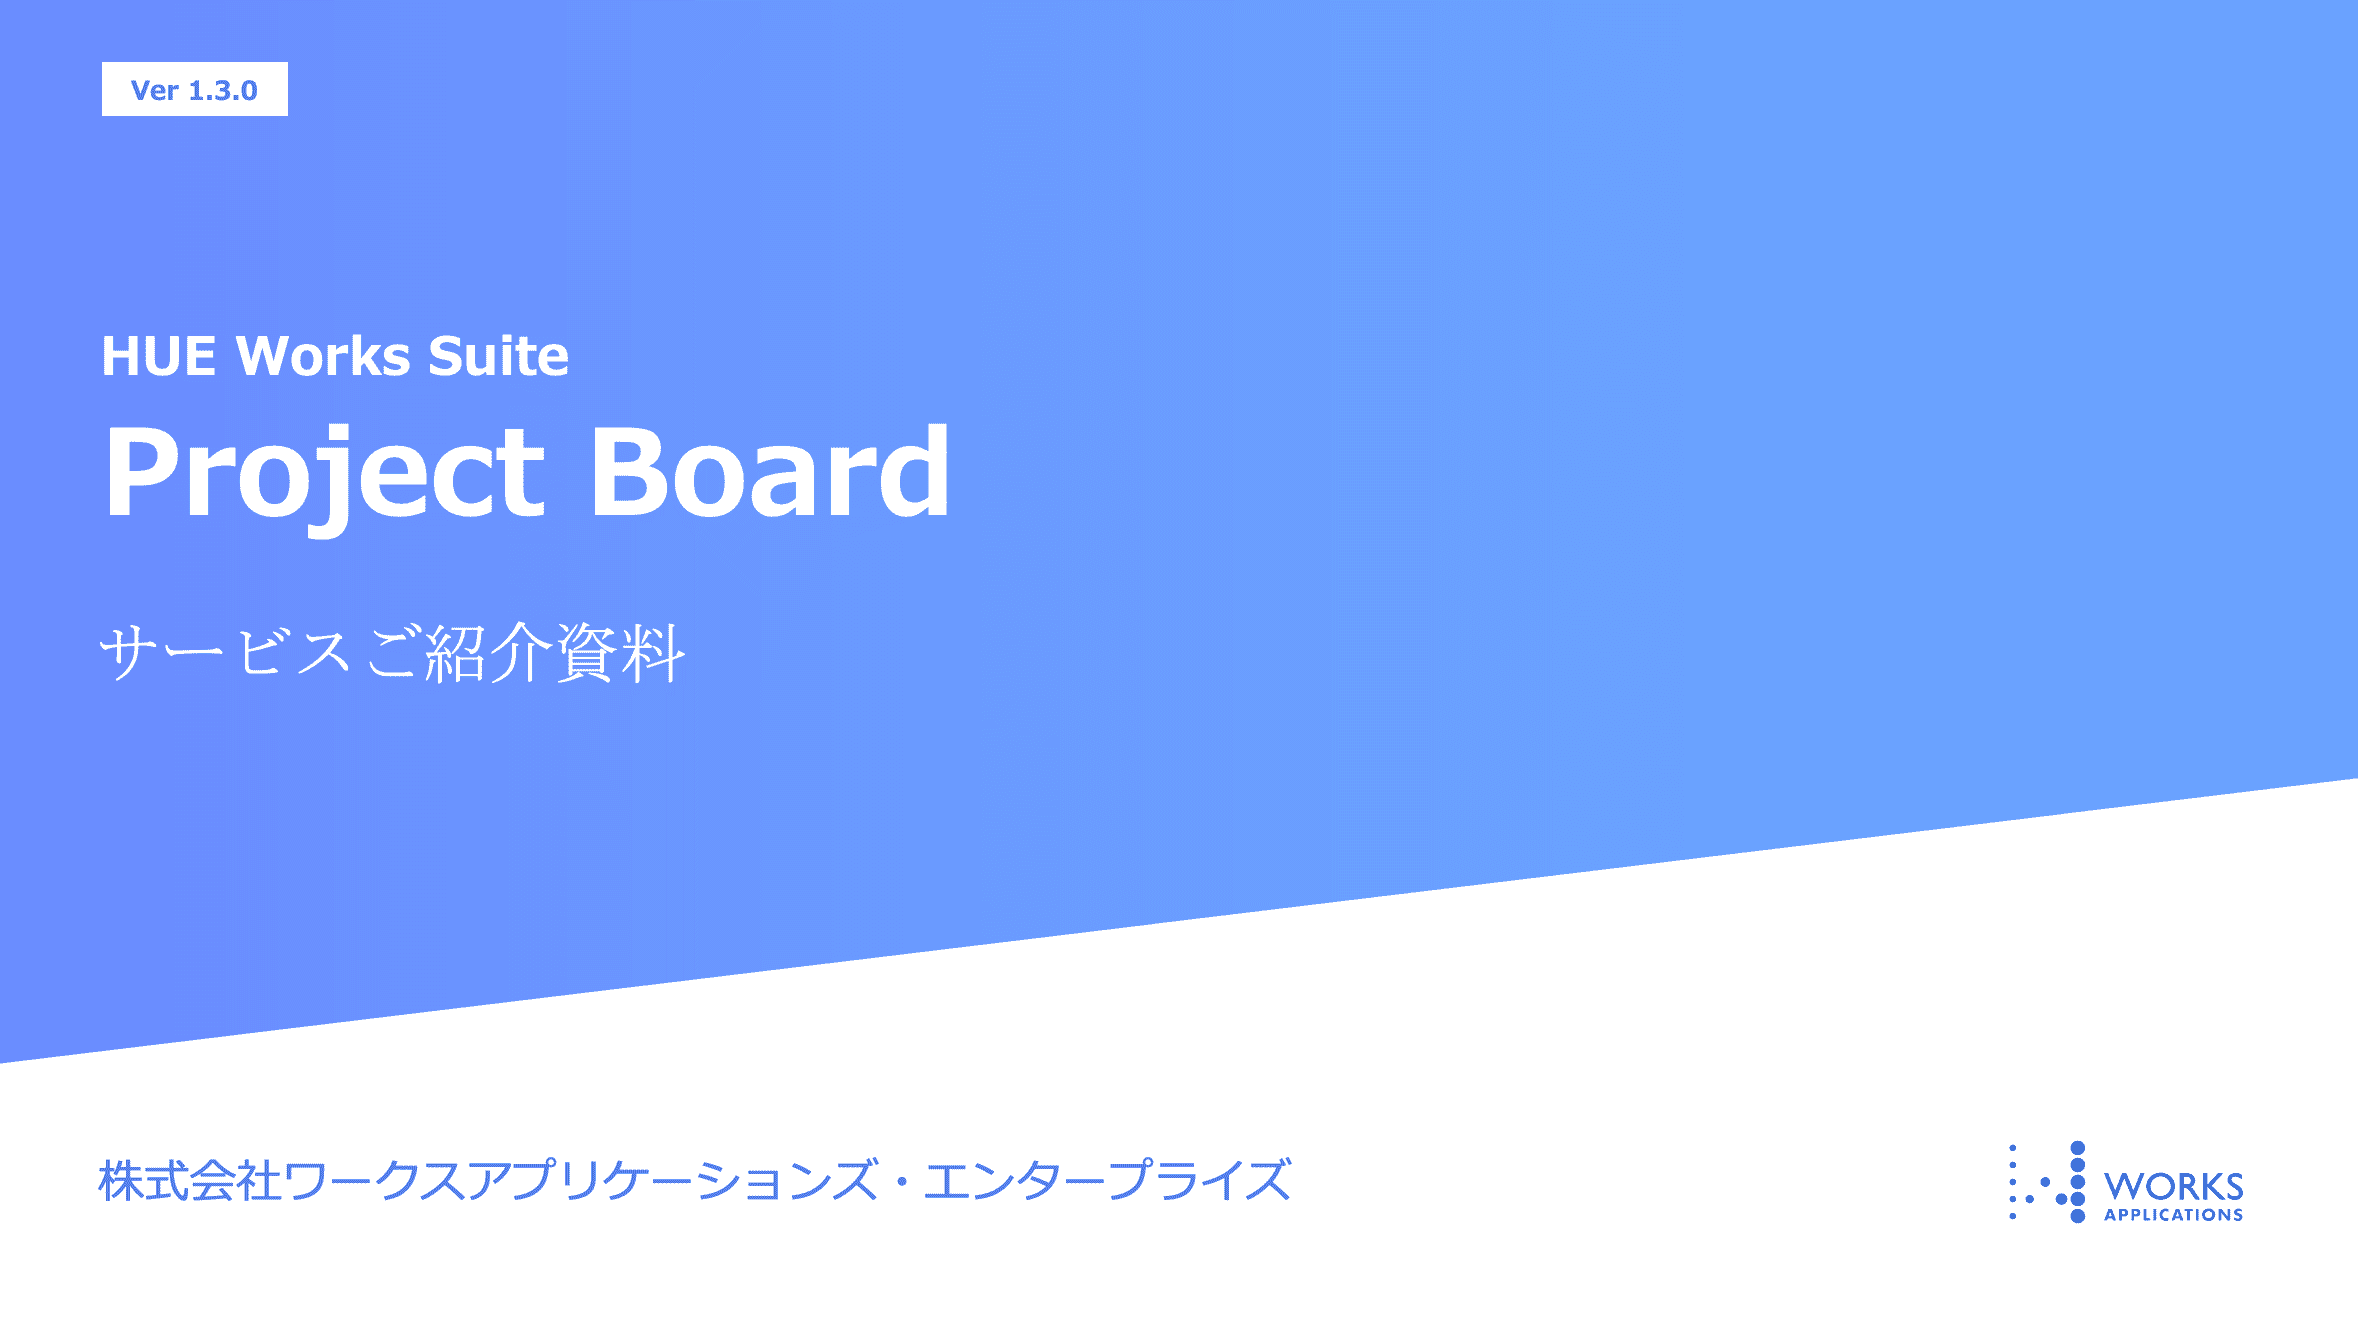 Project Board製品ご紹介資料